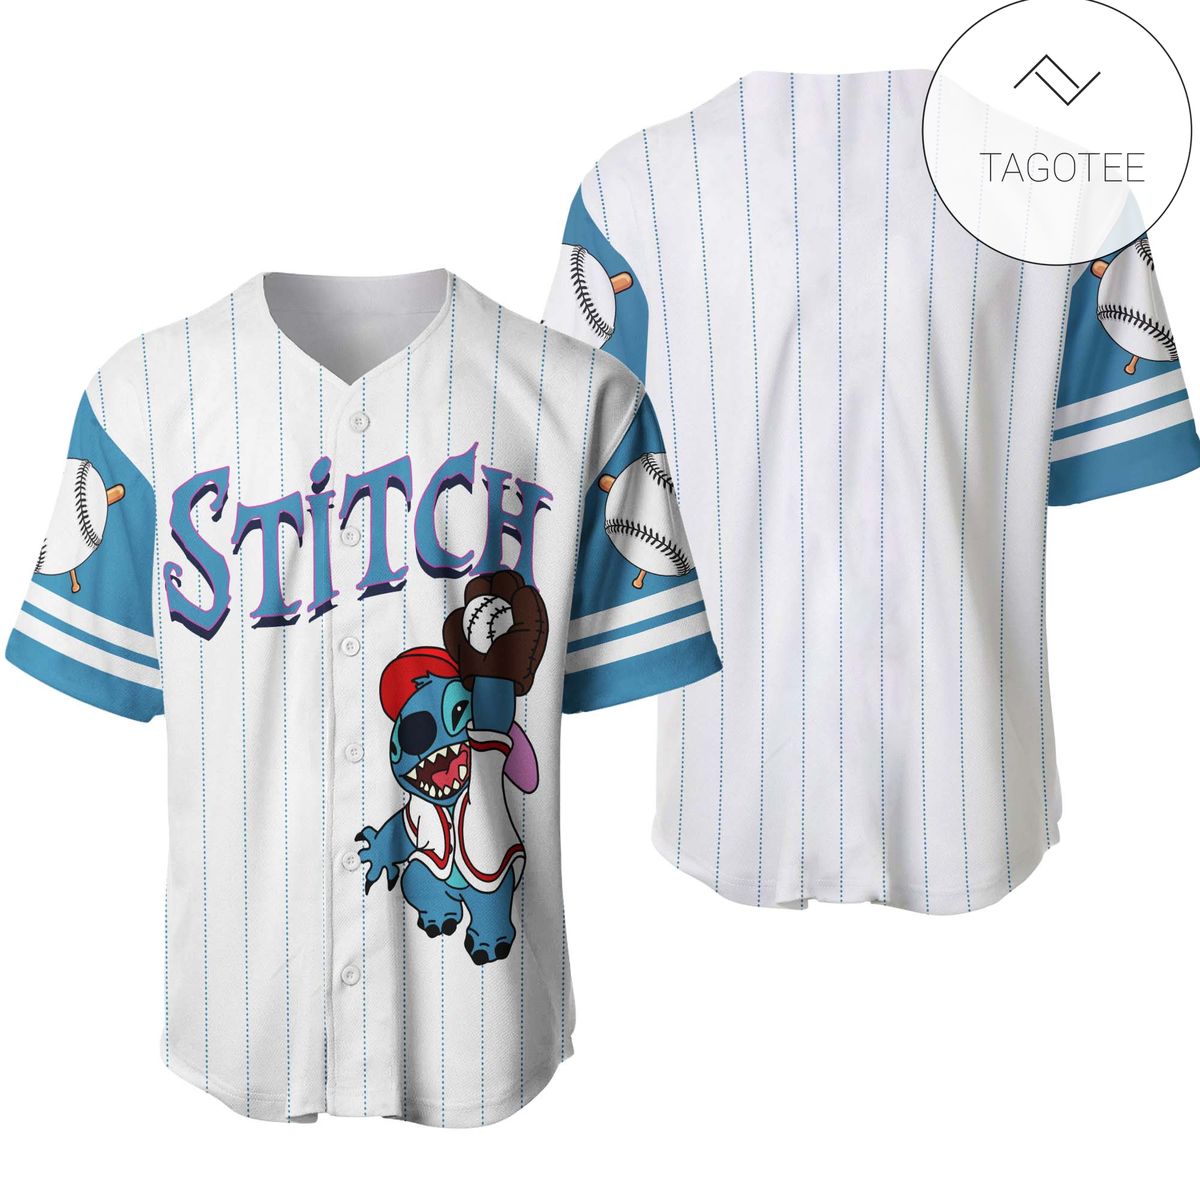 Stitch Disney Gift Baseball Jersey